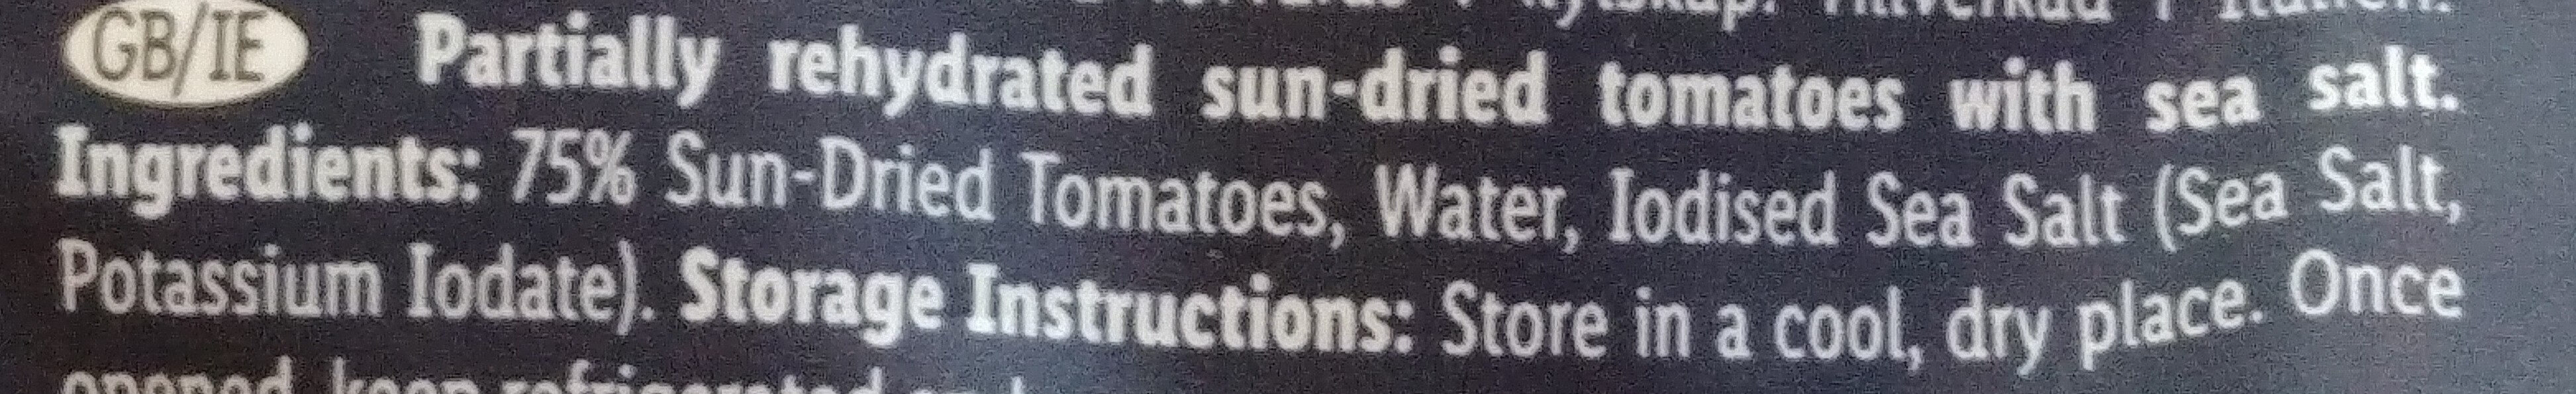 Sun-dried Tomatoes - Ingredients - en